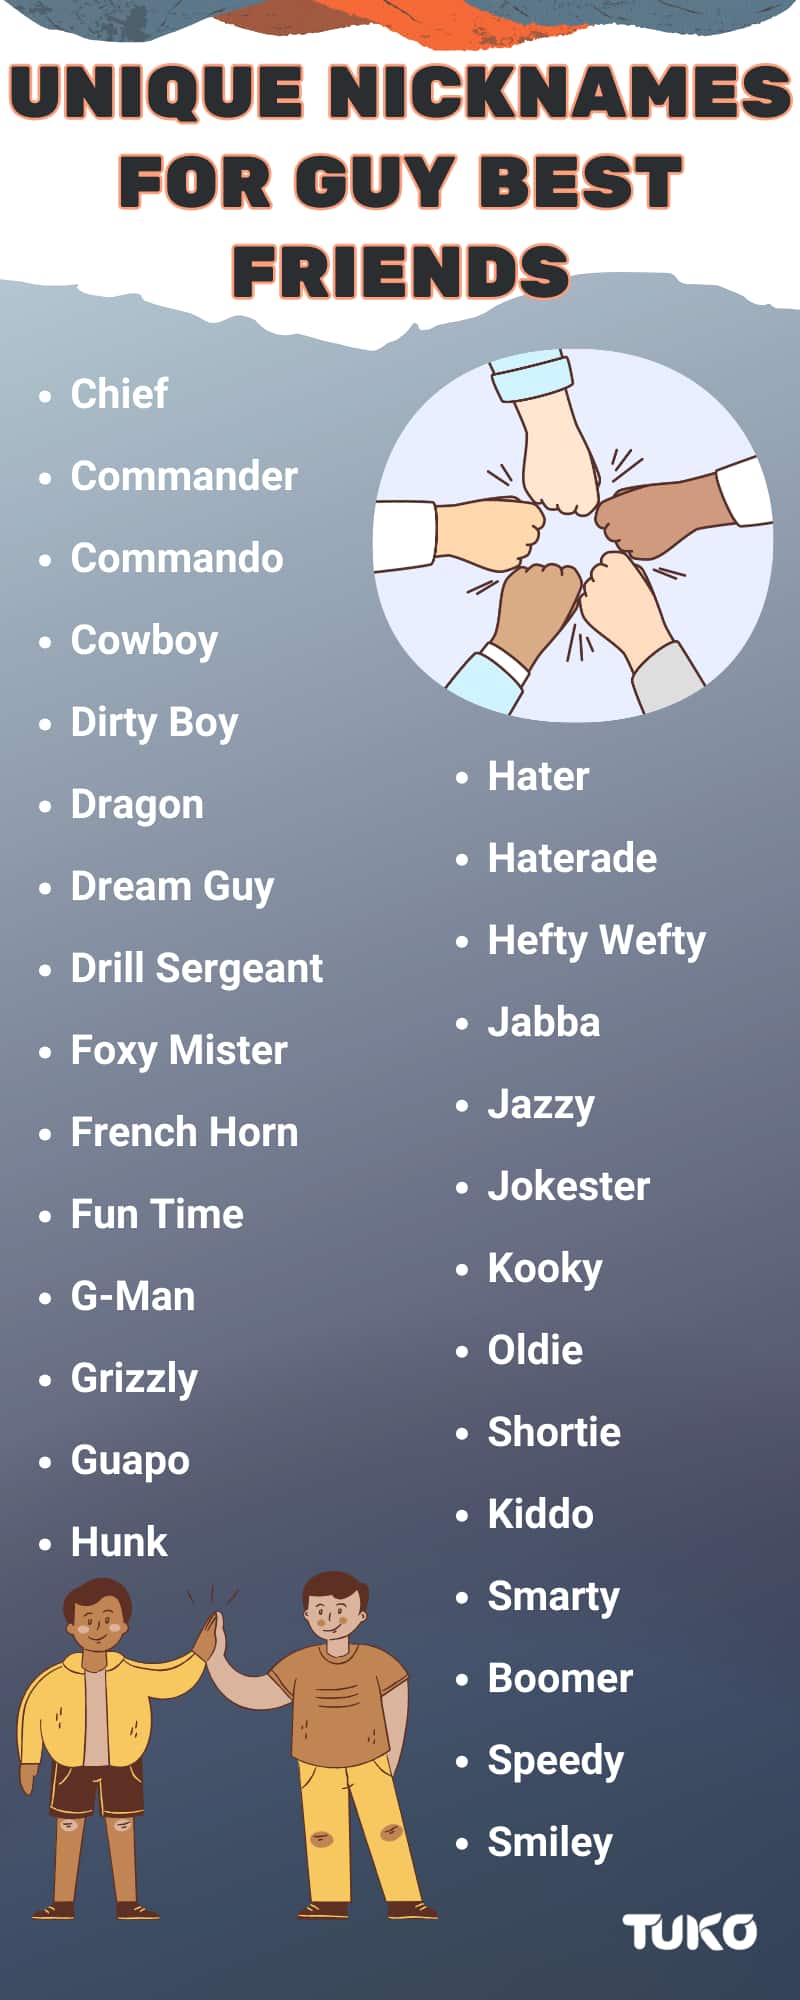 Unique nicknames for guy best friends